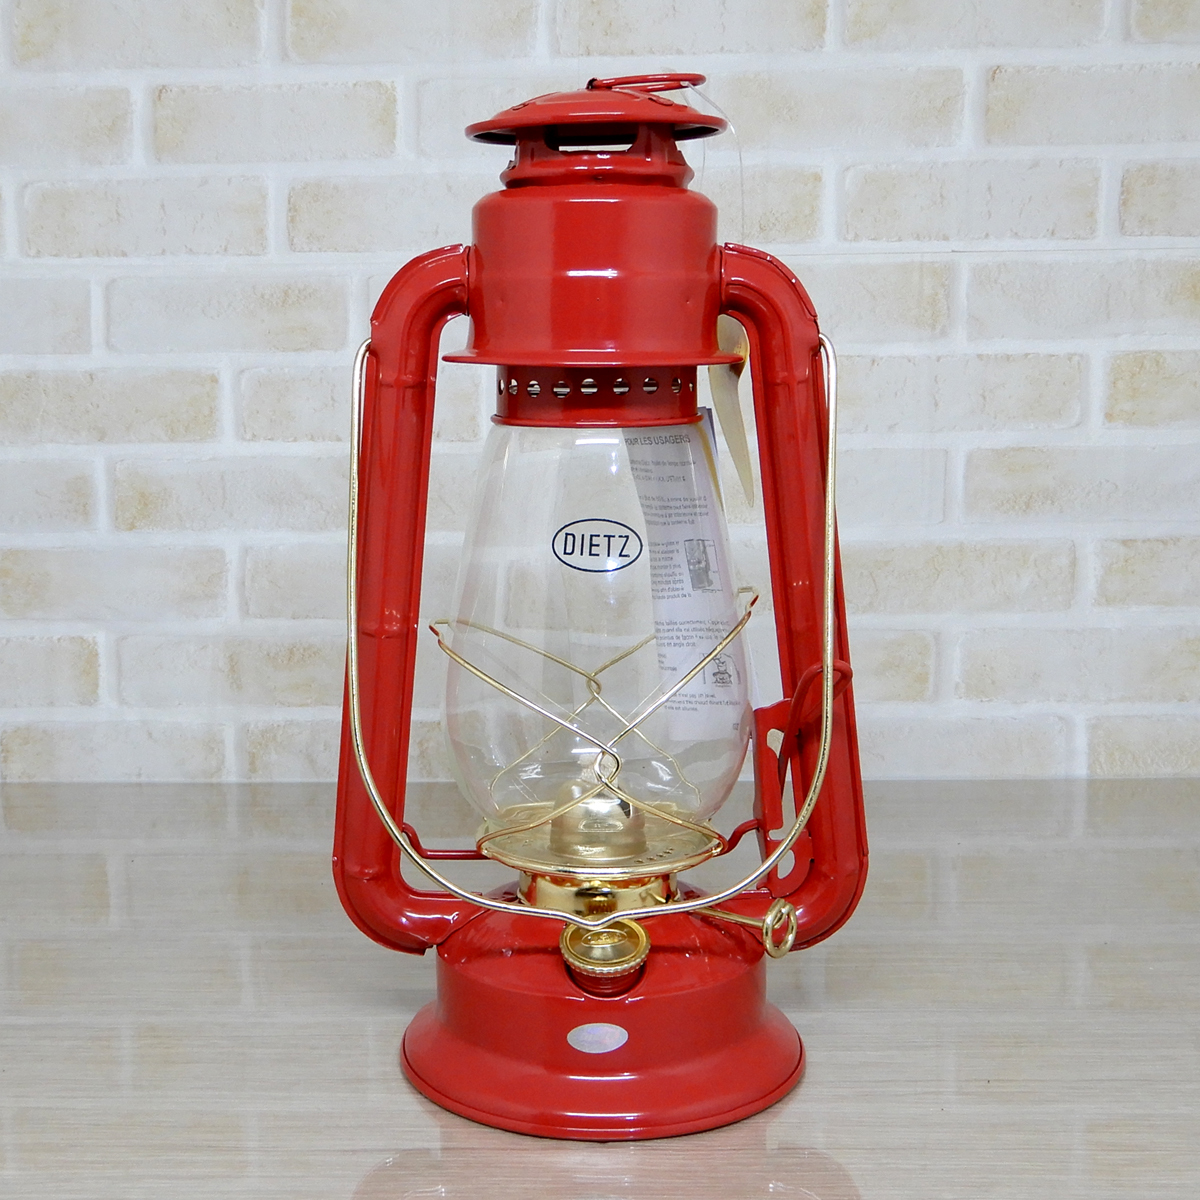 替芯2本付【送料無料】新品 Dietz #20 Junior Oil Lantern - Red Brass Trim 【日本未発売】◇デイツ 赤金 レッド ハリケーンランタン 真鍮